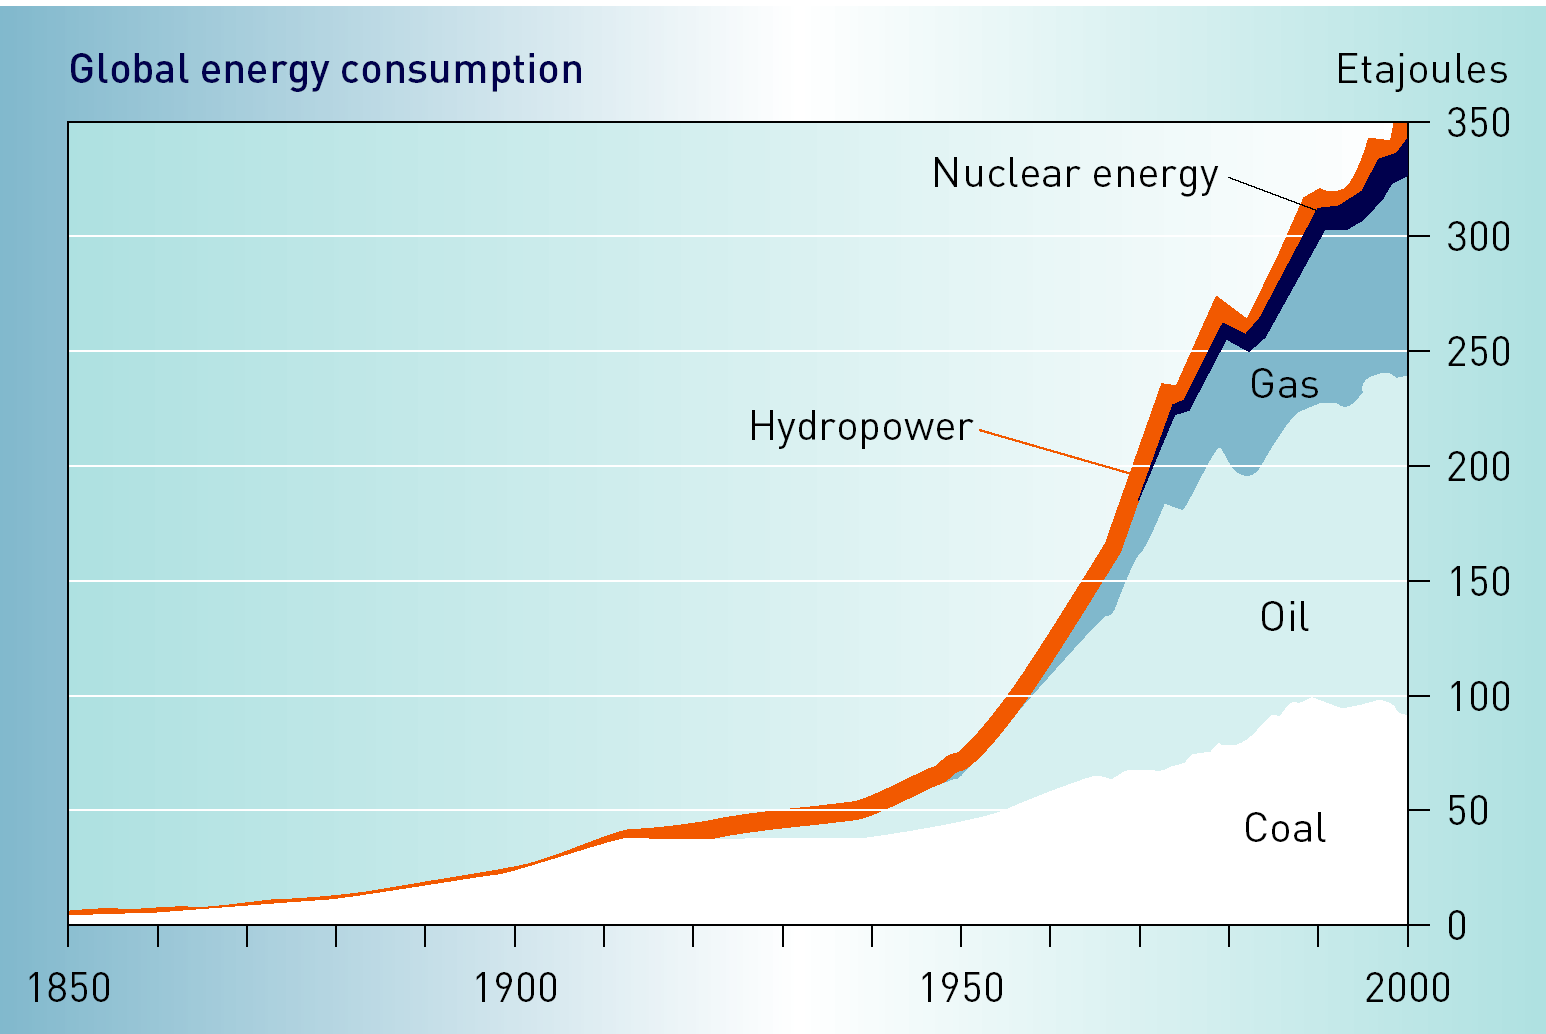 Globalna konsumpcja energii energia jądrowa x 10 18 J energia